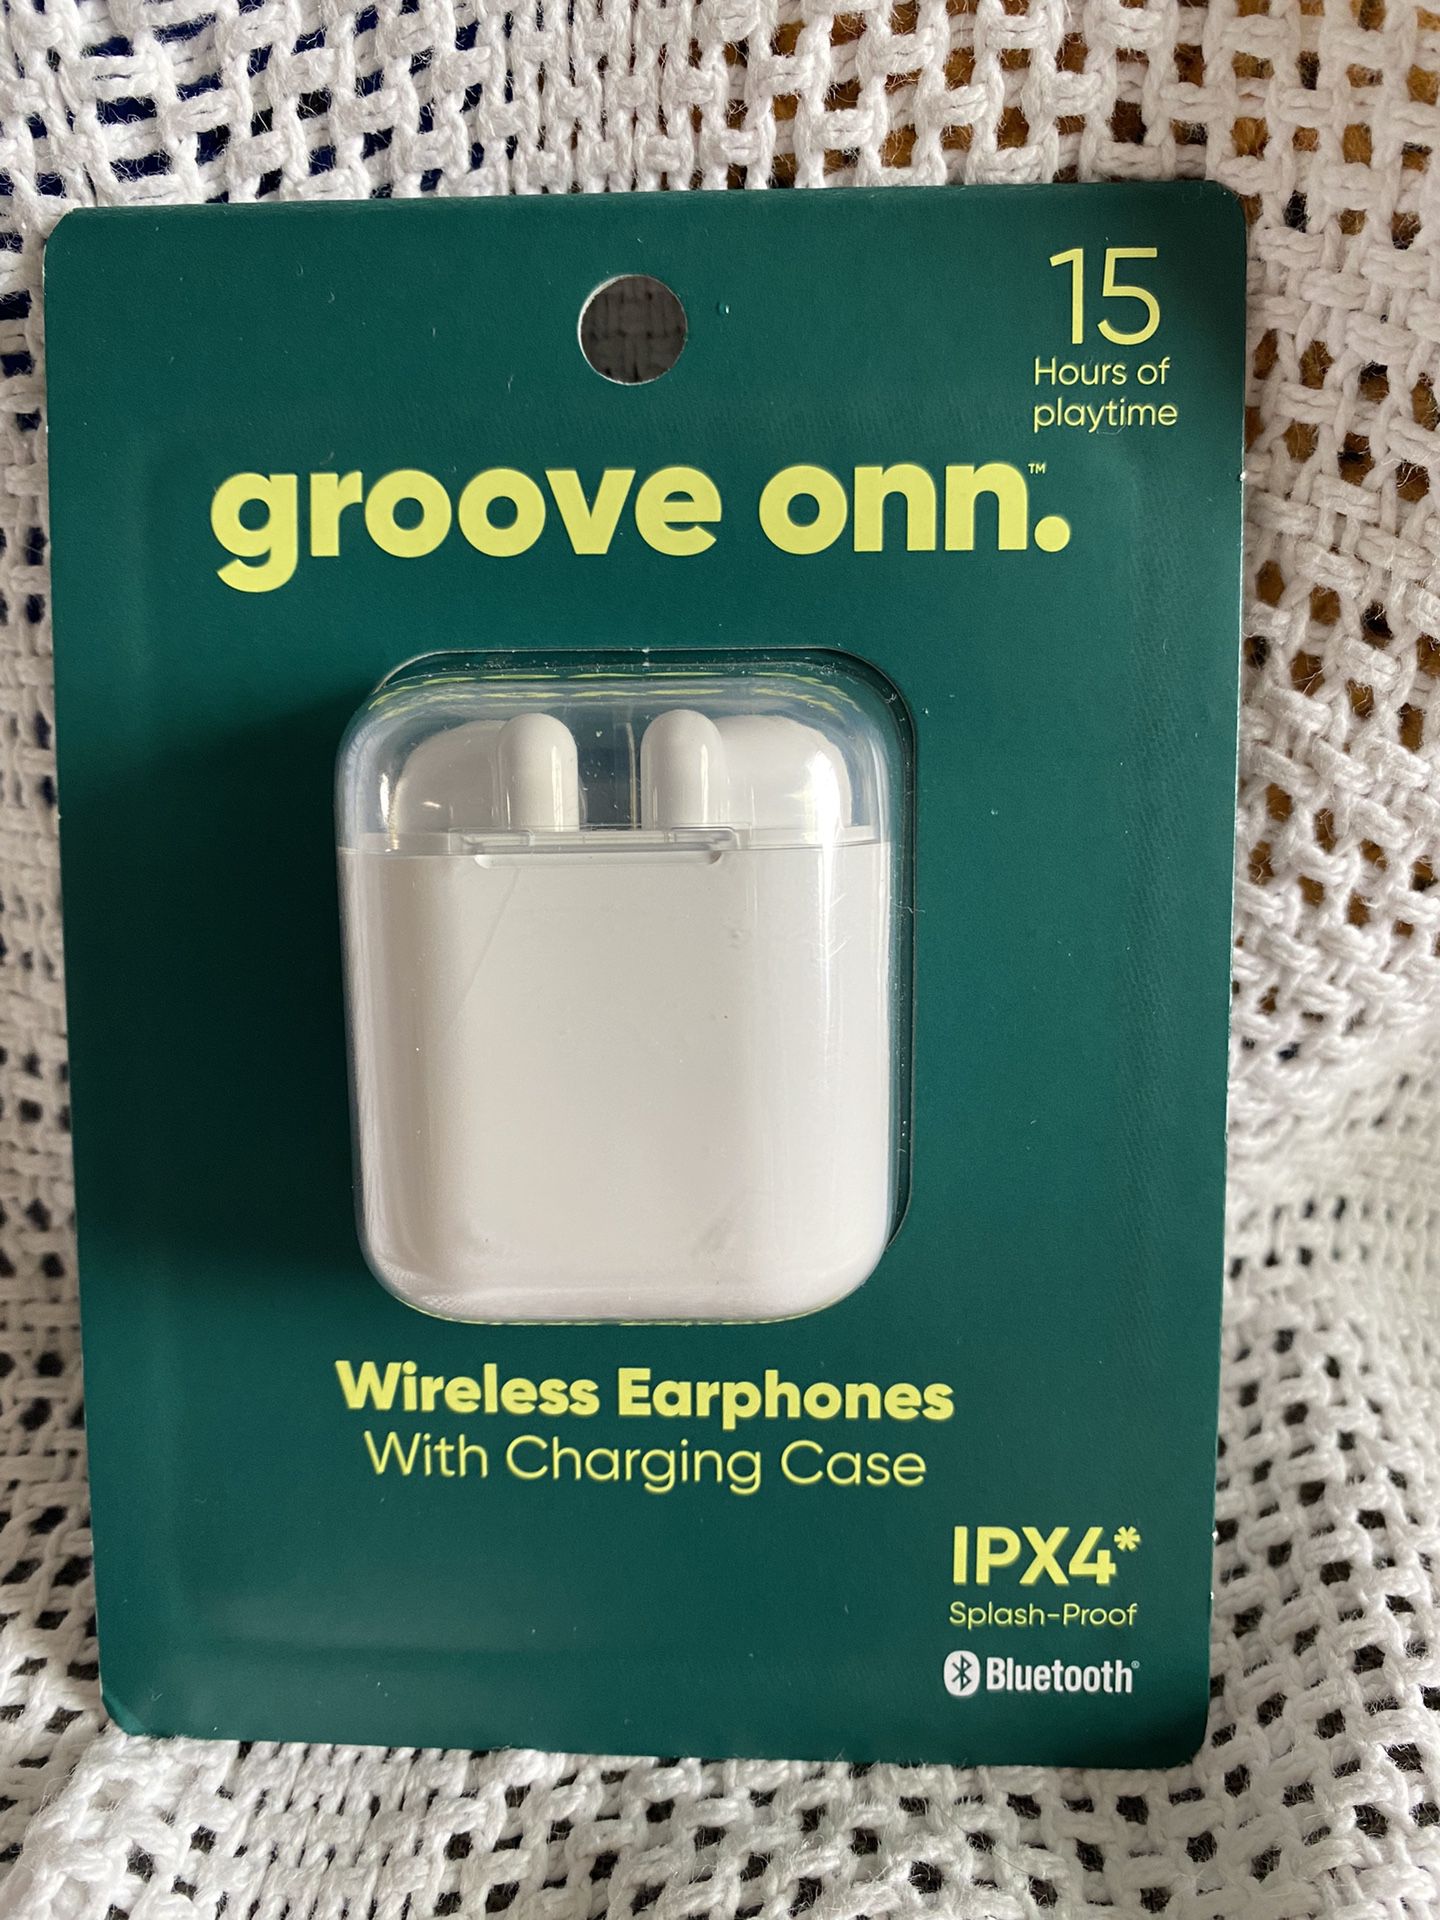 (NEW/In-box) Groove onn. Wireless Earphones w/ Case (IPX4 Water Resistant)